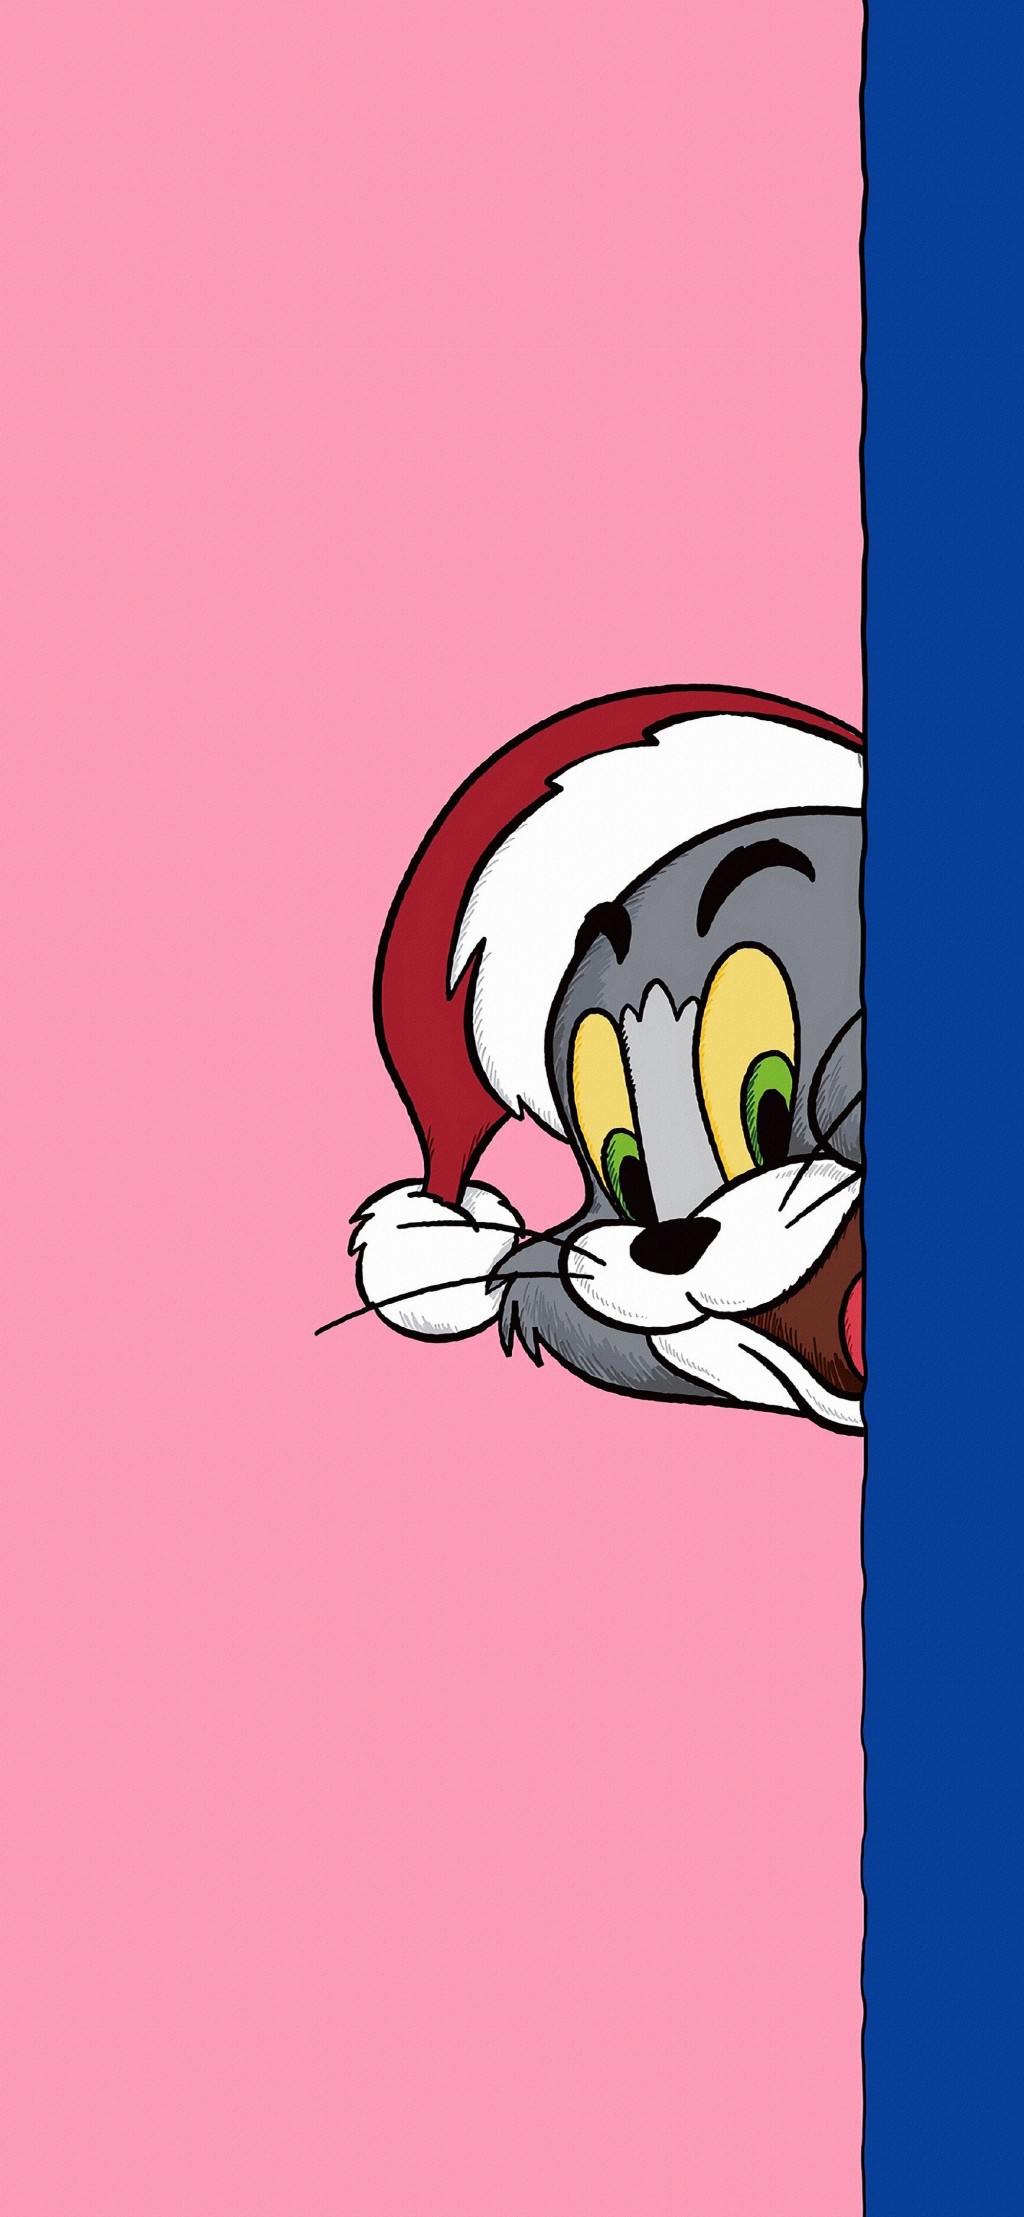 瑞幸猫和老鼠圣诞节可爱卡通手机壁纸